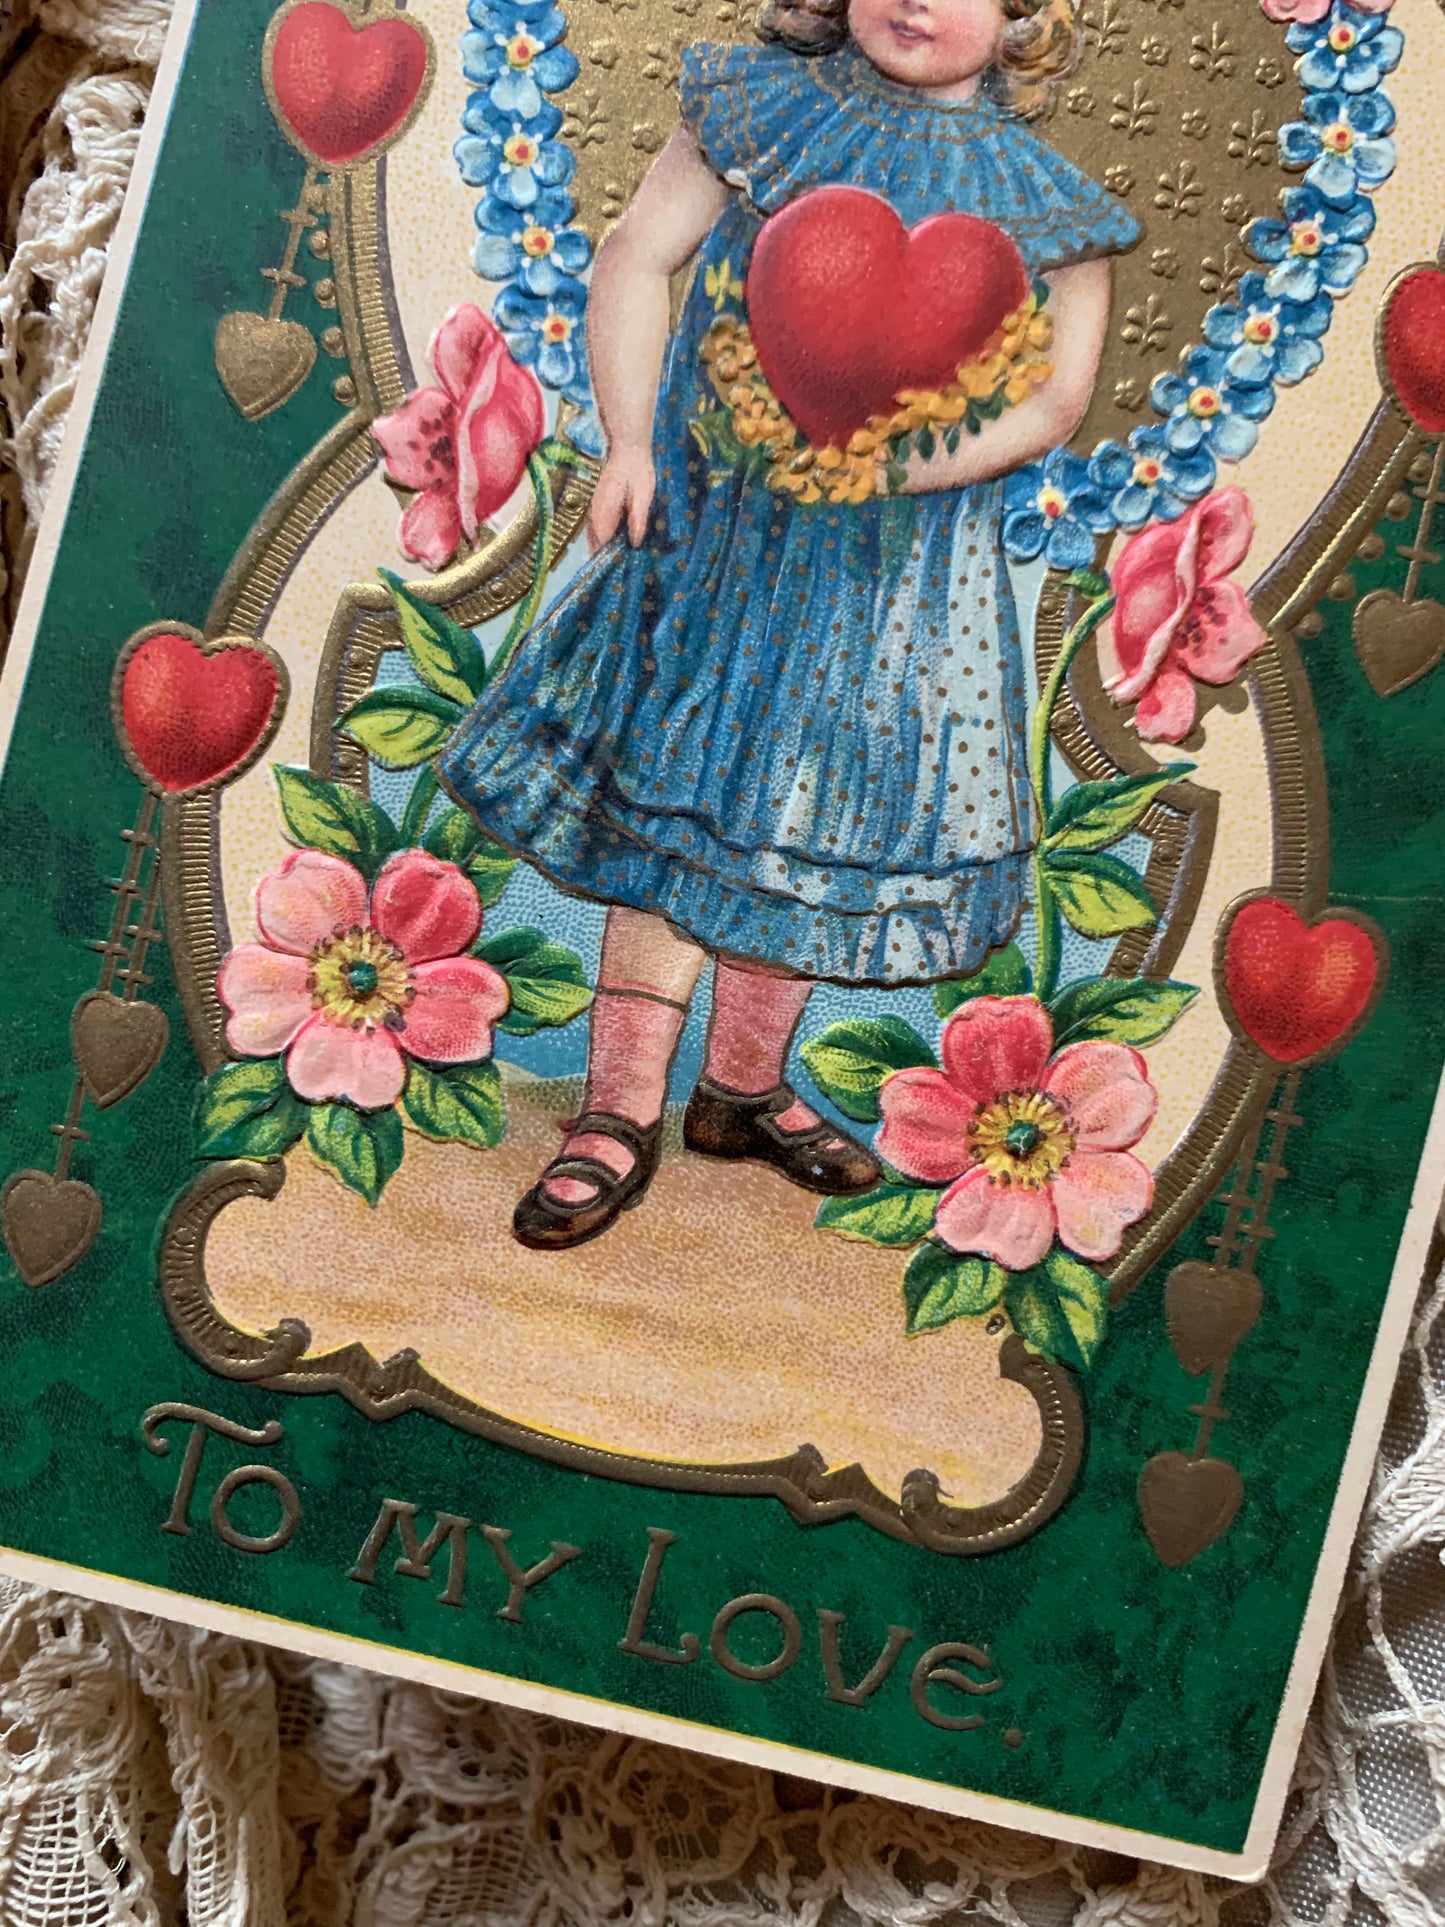 Antique German Valentine postcard